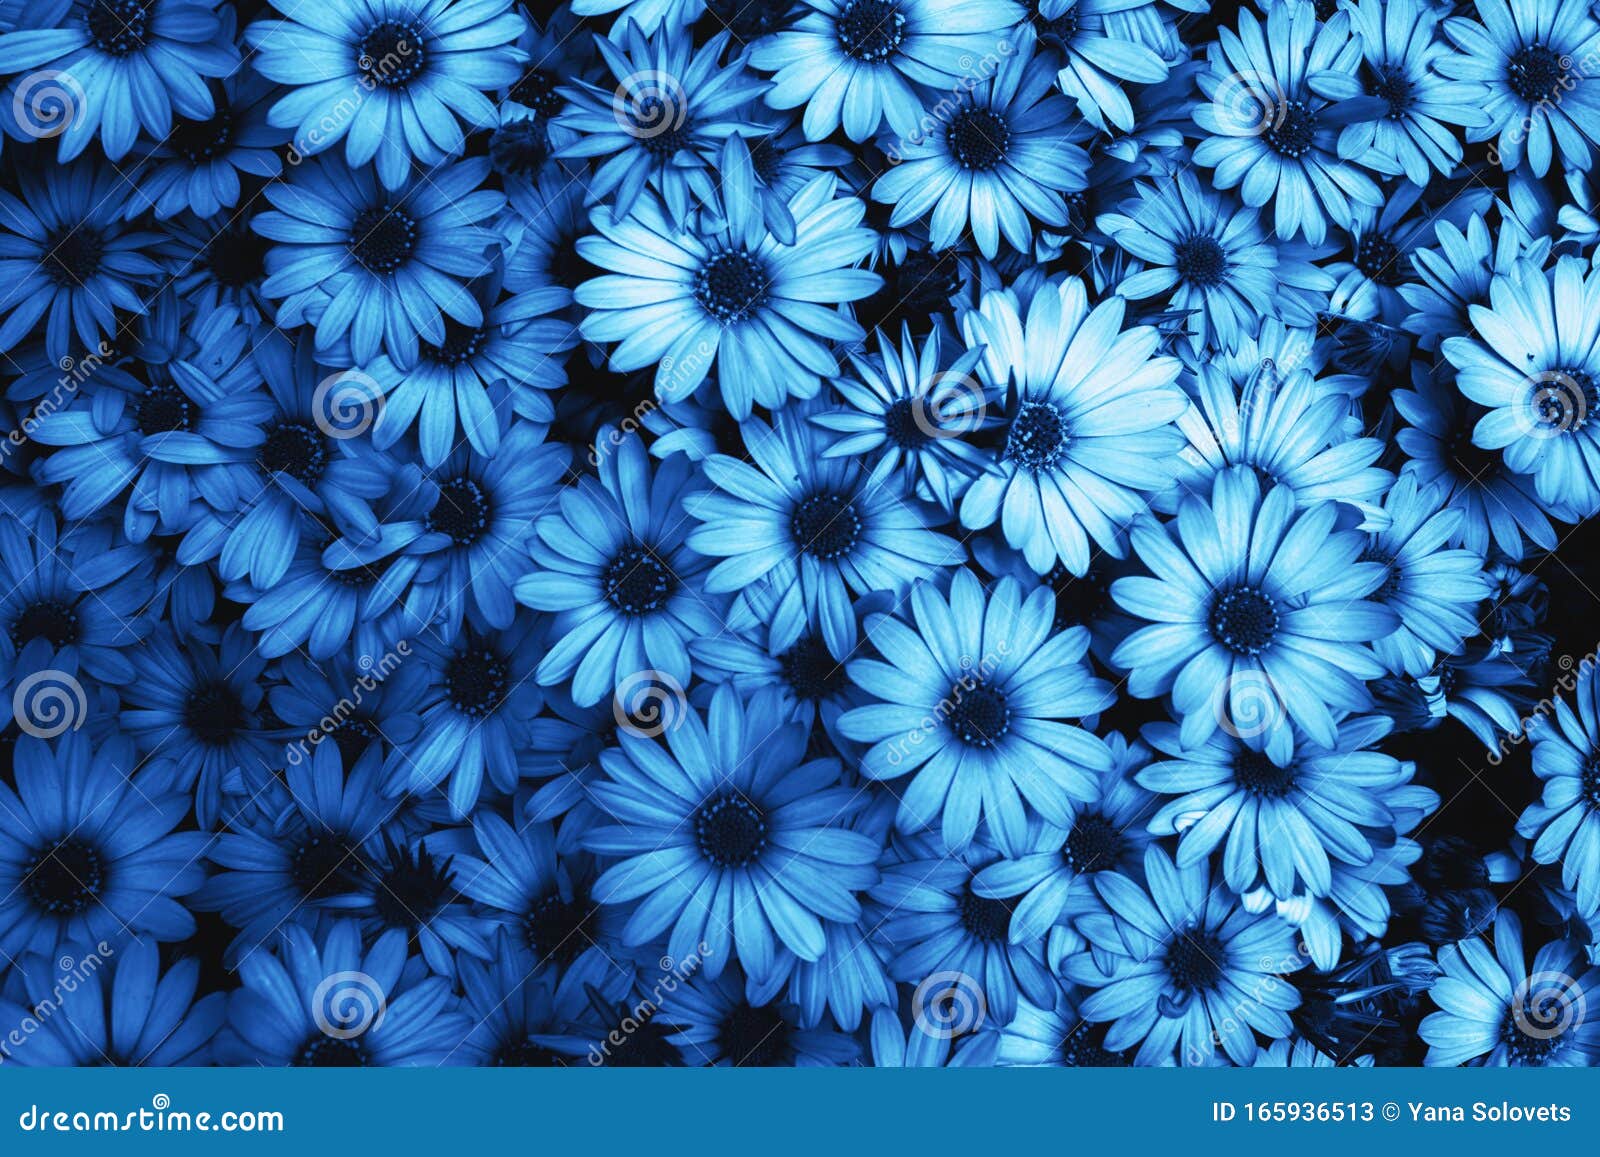 Details 100 blue background flower - Abzlocal.mx